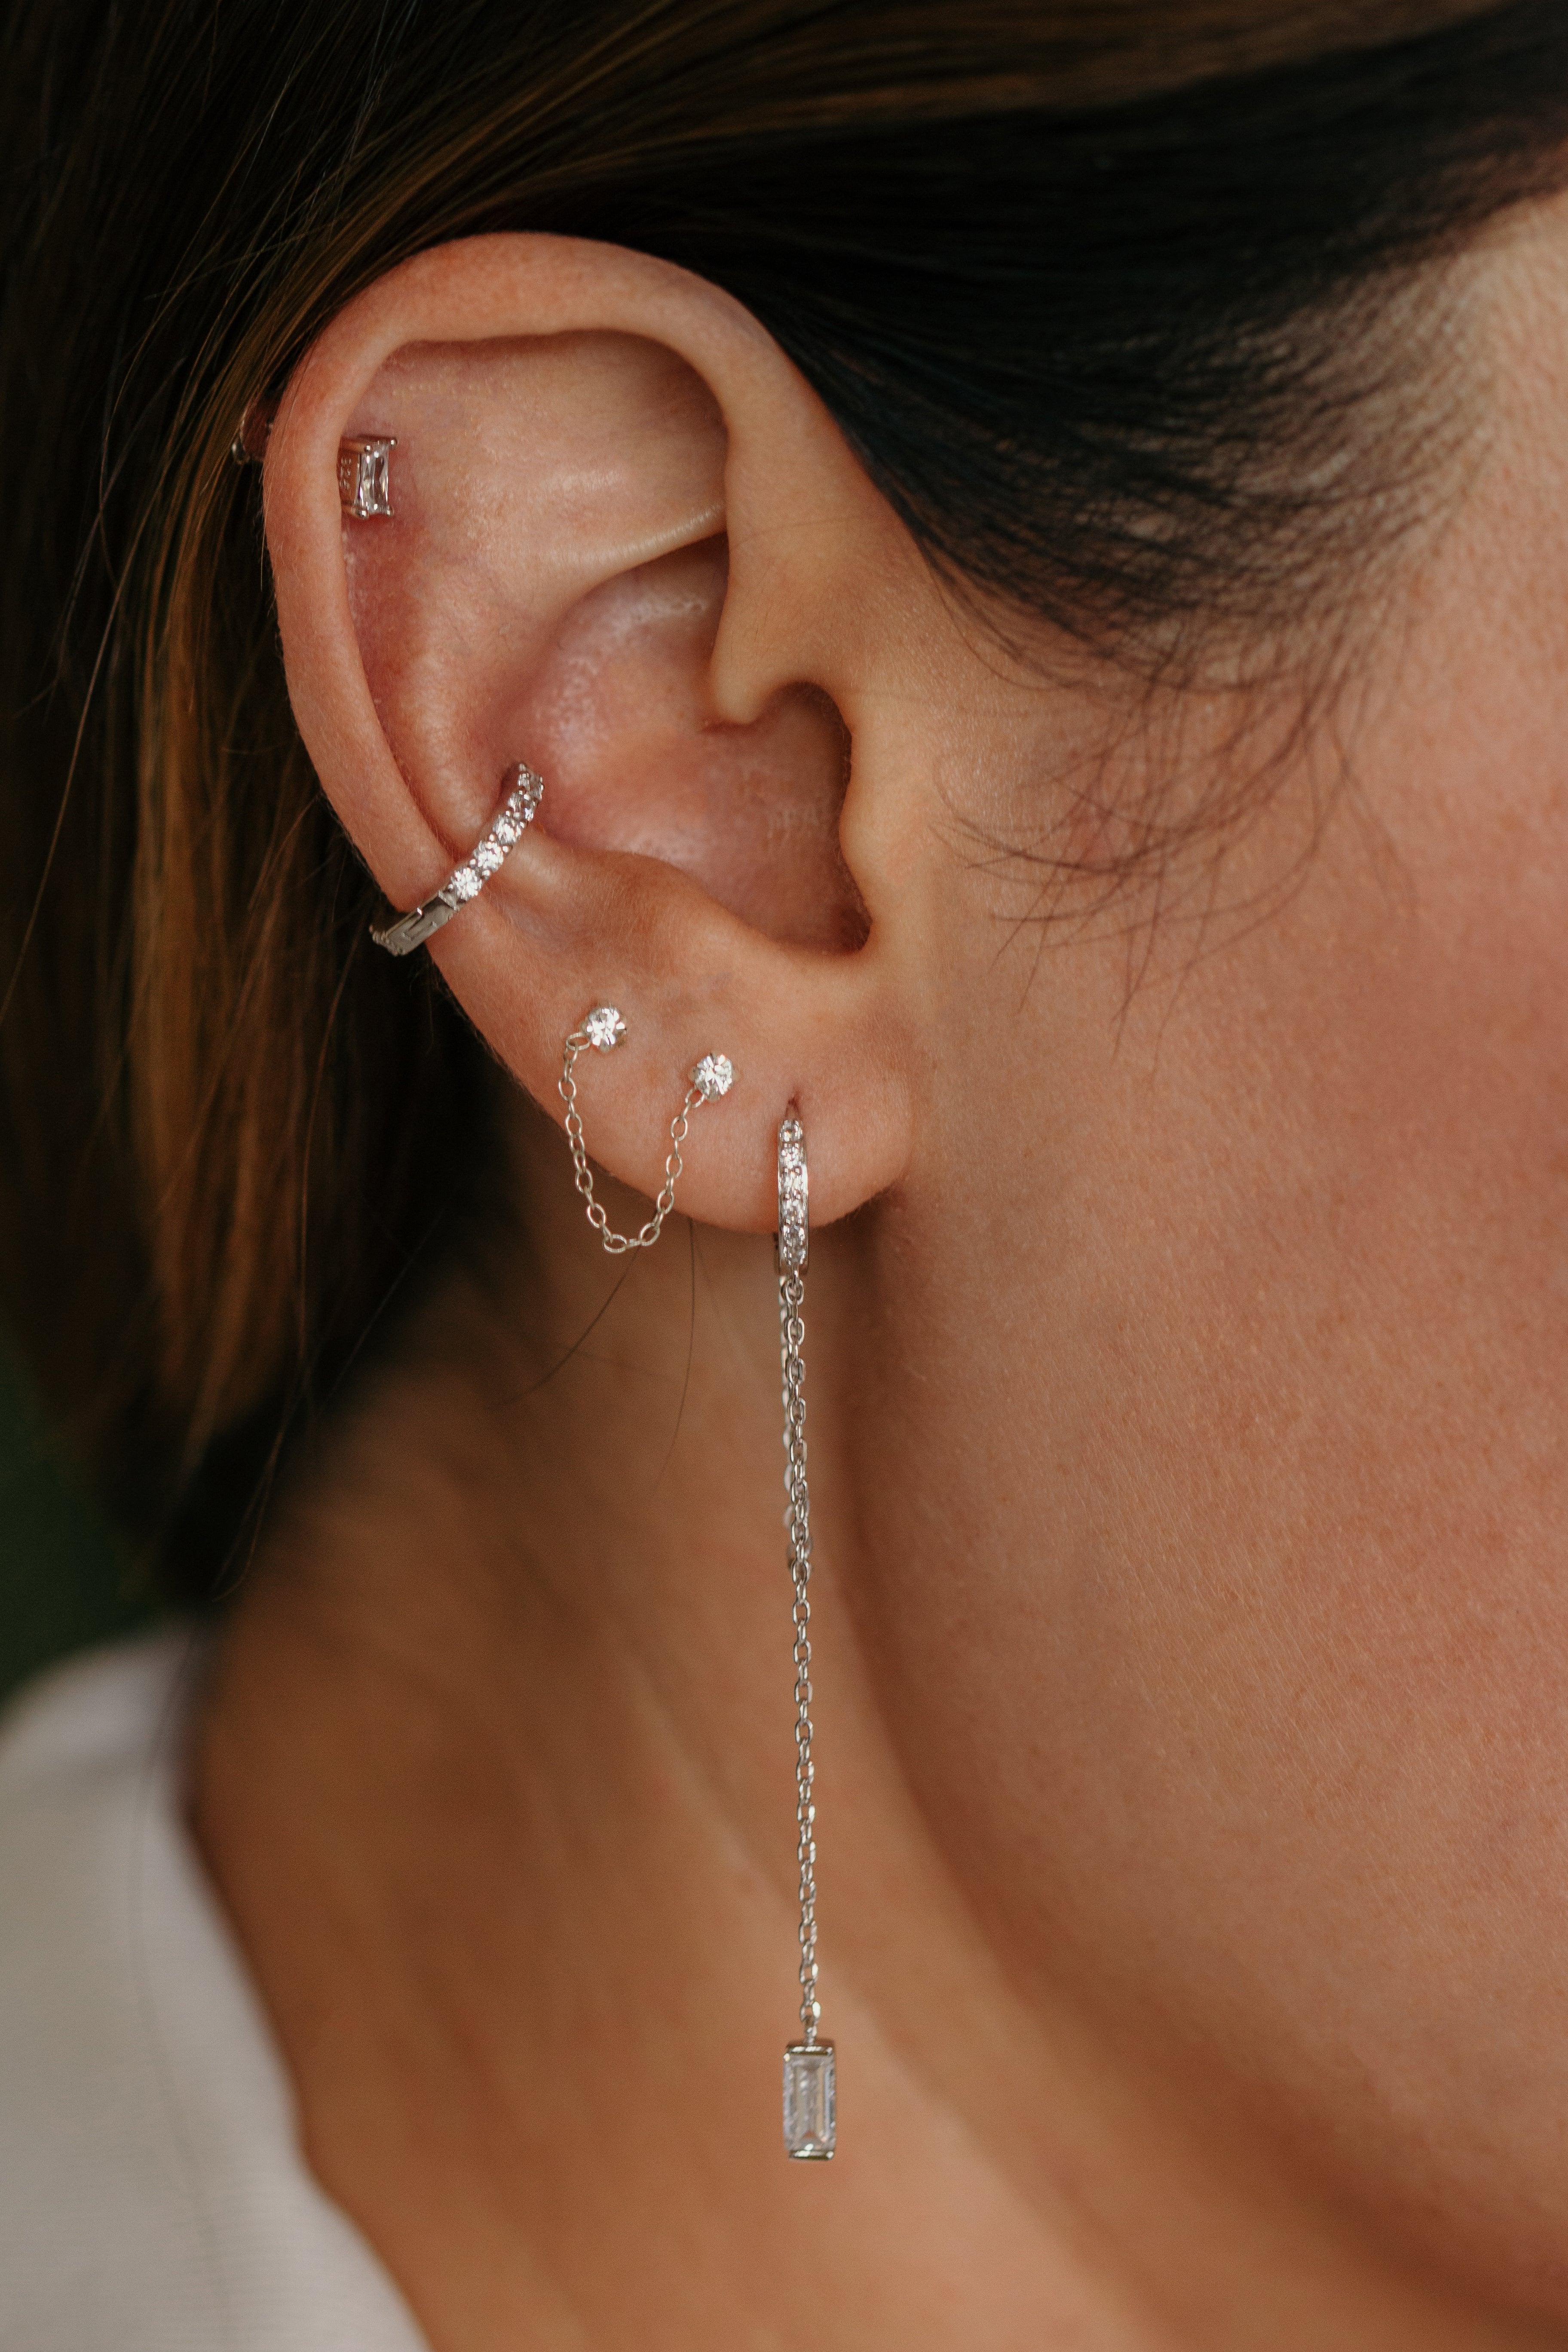 Buy Double Chain Earring Two Stud Chain Earrings Double Piercing Earring  Online in India - Etsy